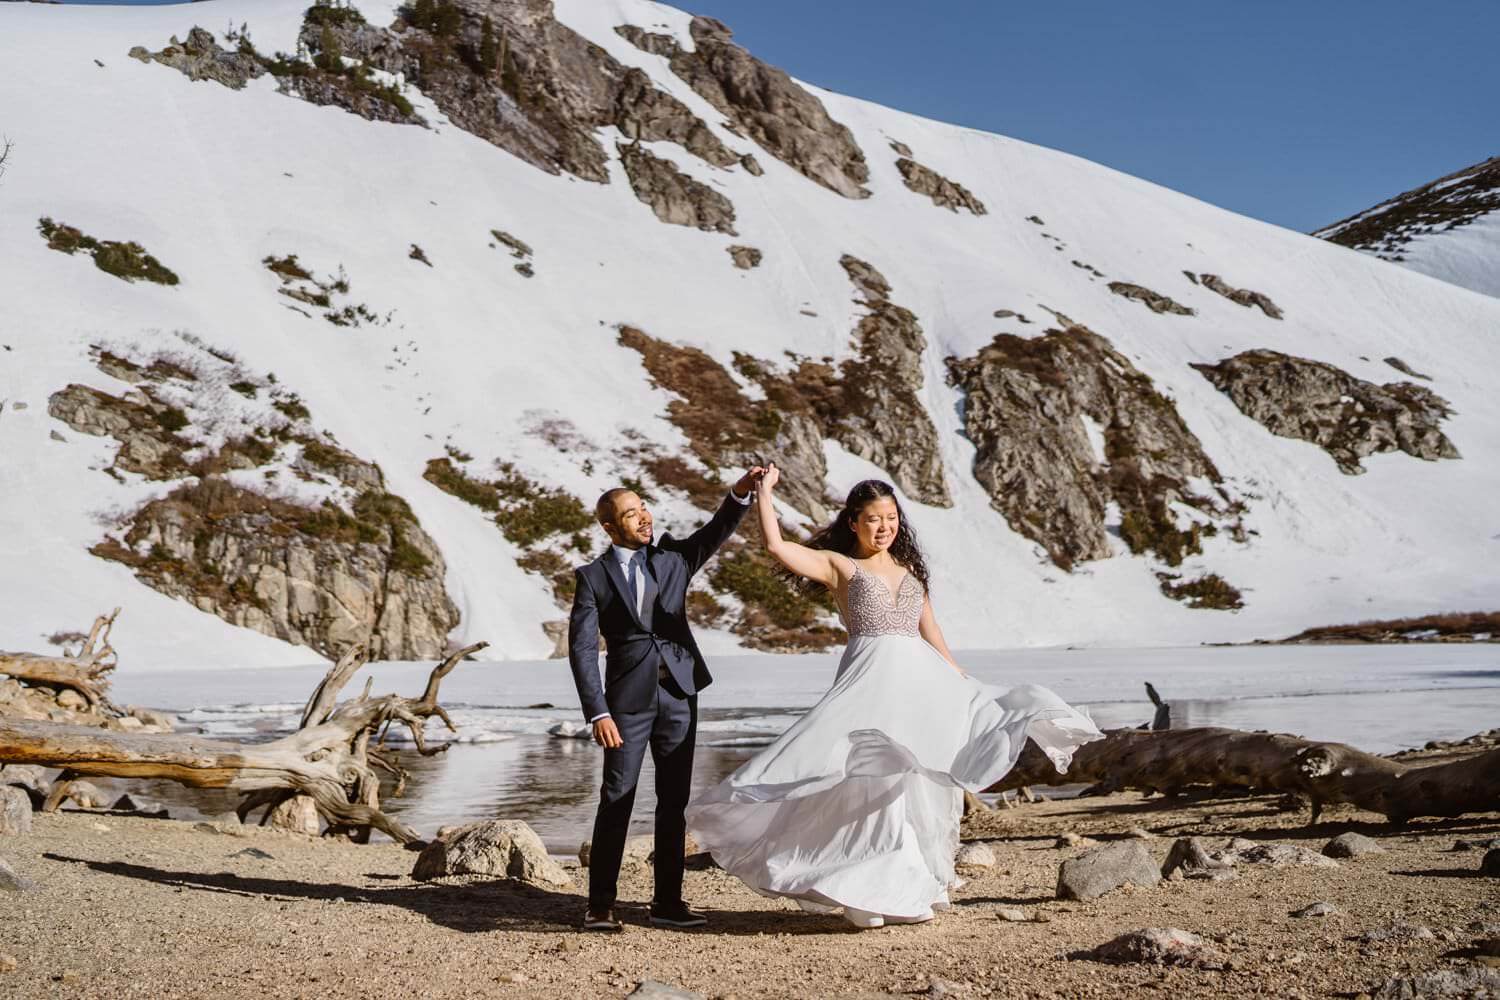 Bride dancing with groom at St. Marys Glacier in Colorado.